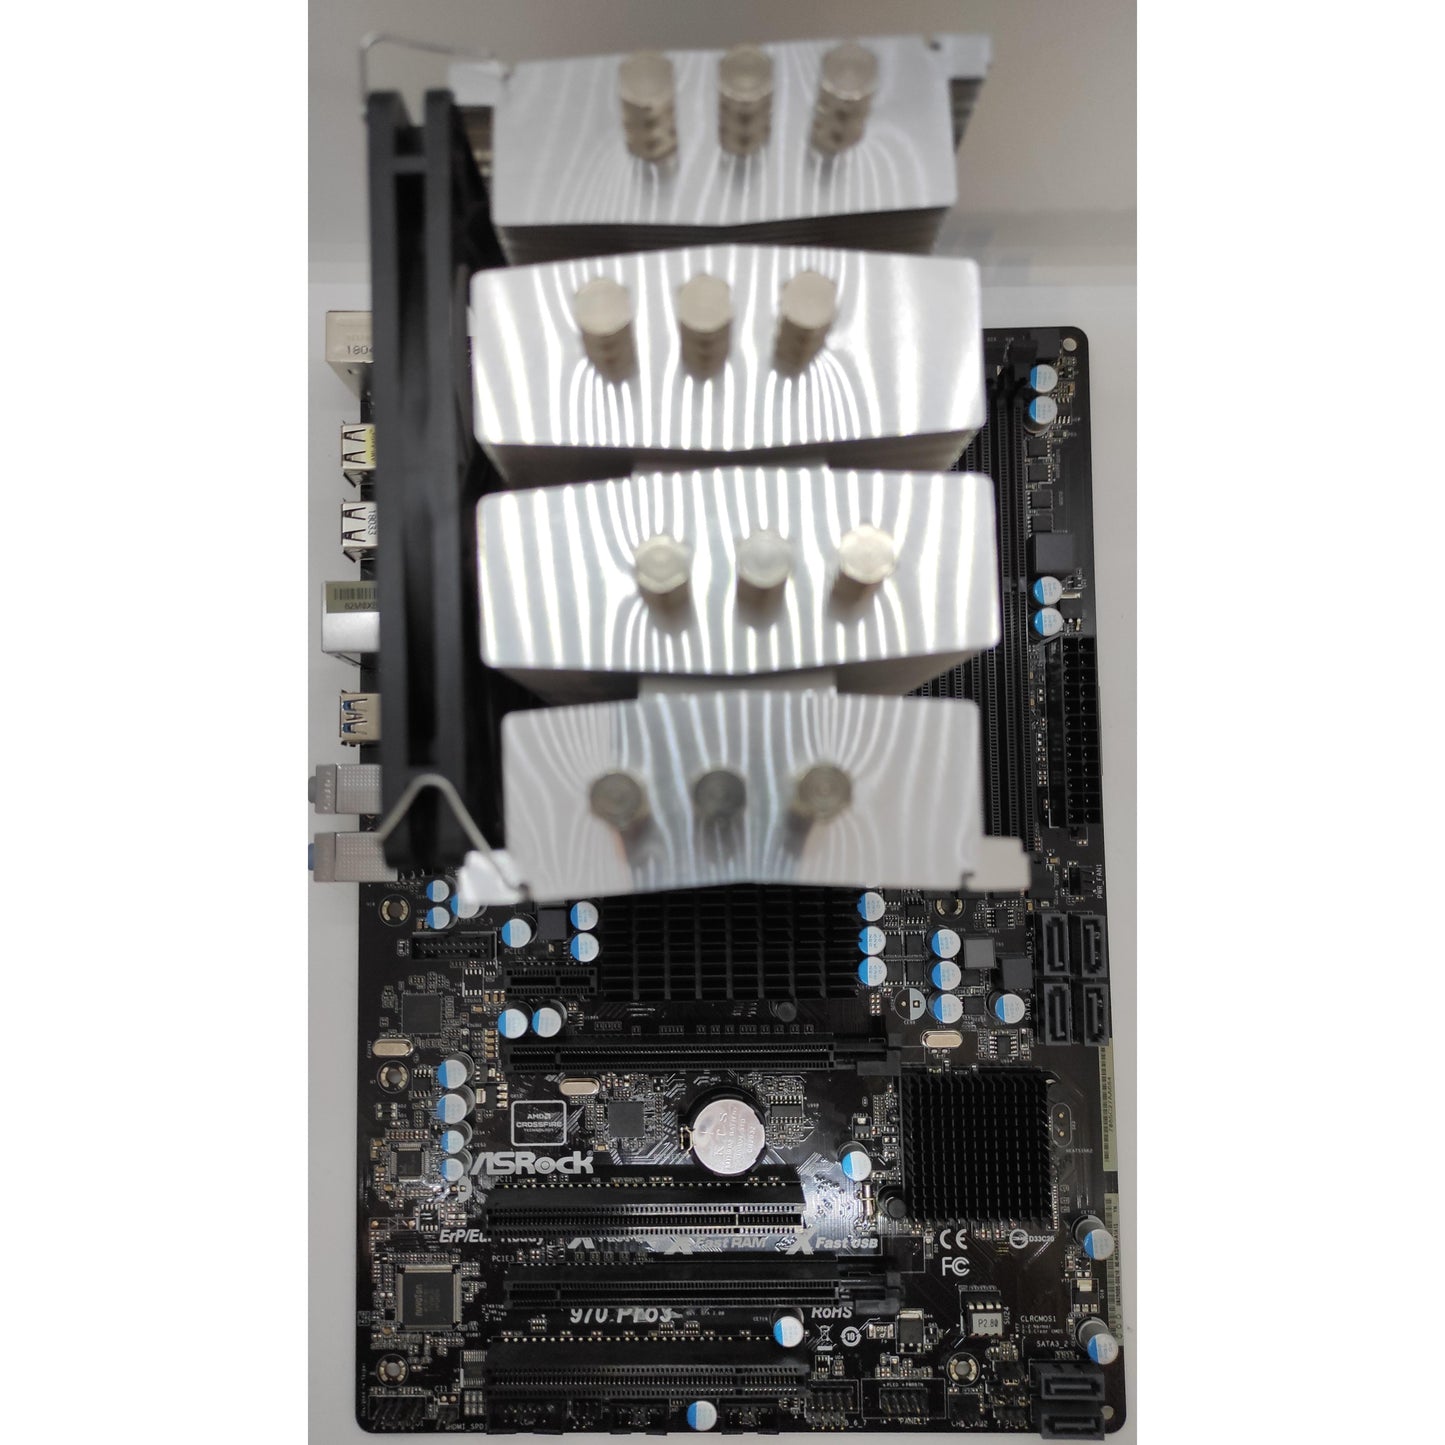 Upgrade Bundle | ASRock 970 Pro3 R2.0 & AMD FX-8350 | 4 - 32GB DDR3 RAM